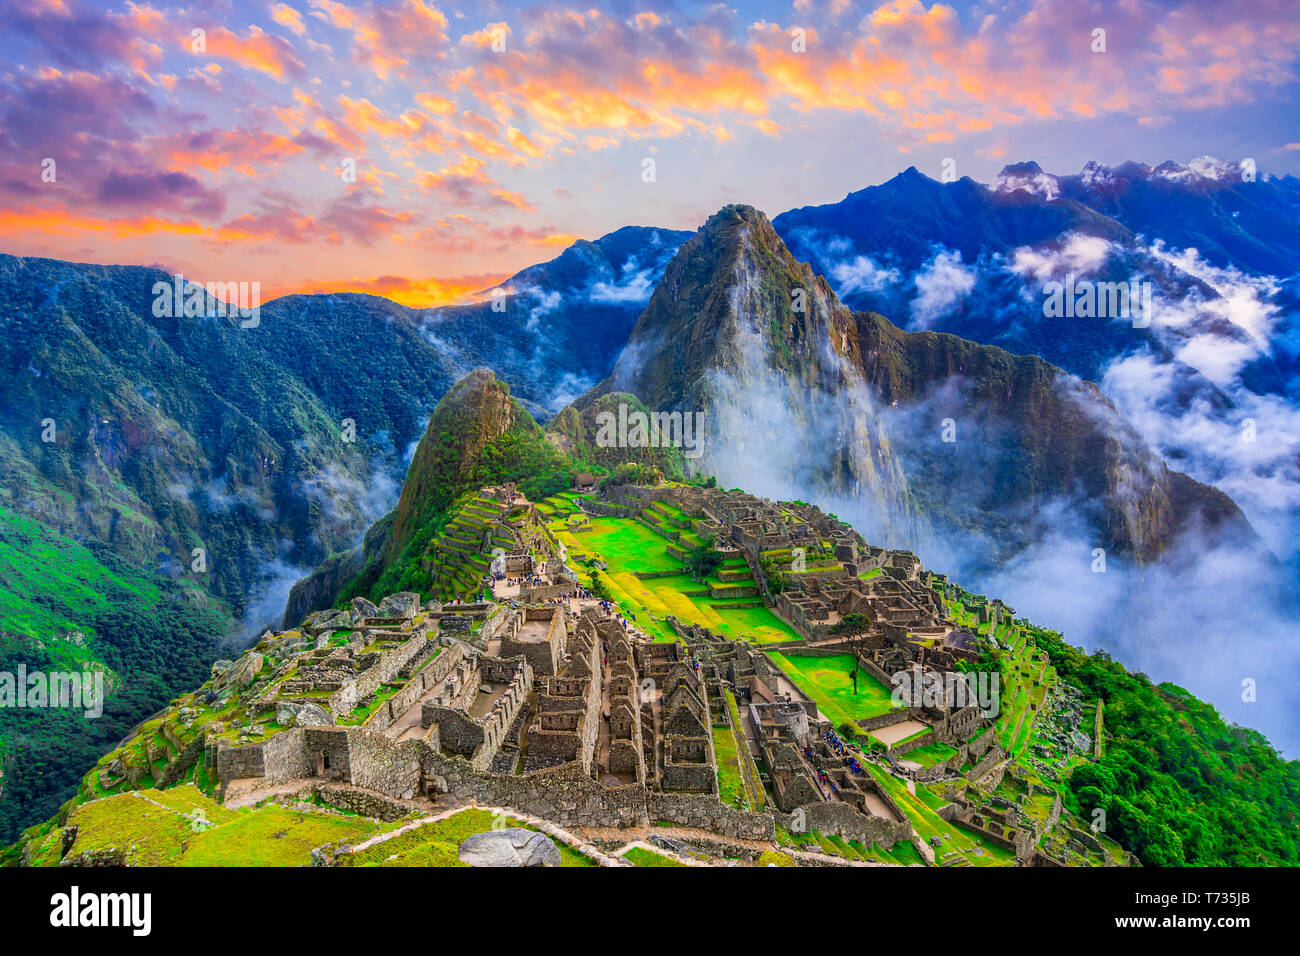 Machu Picchu, Cusco, Peru: Übersicht der verlorenen Inkastadt Machu Picchu, landwirtschaftlichen Terrassen und Wayna Picchu, Peak im Hintergrund, vor Sonnenaufgang Stockfoto